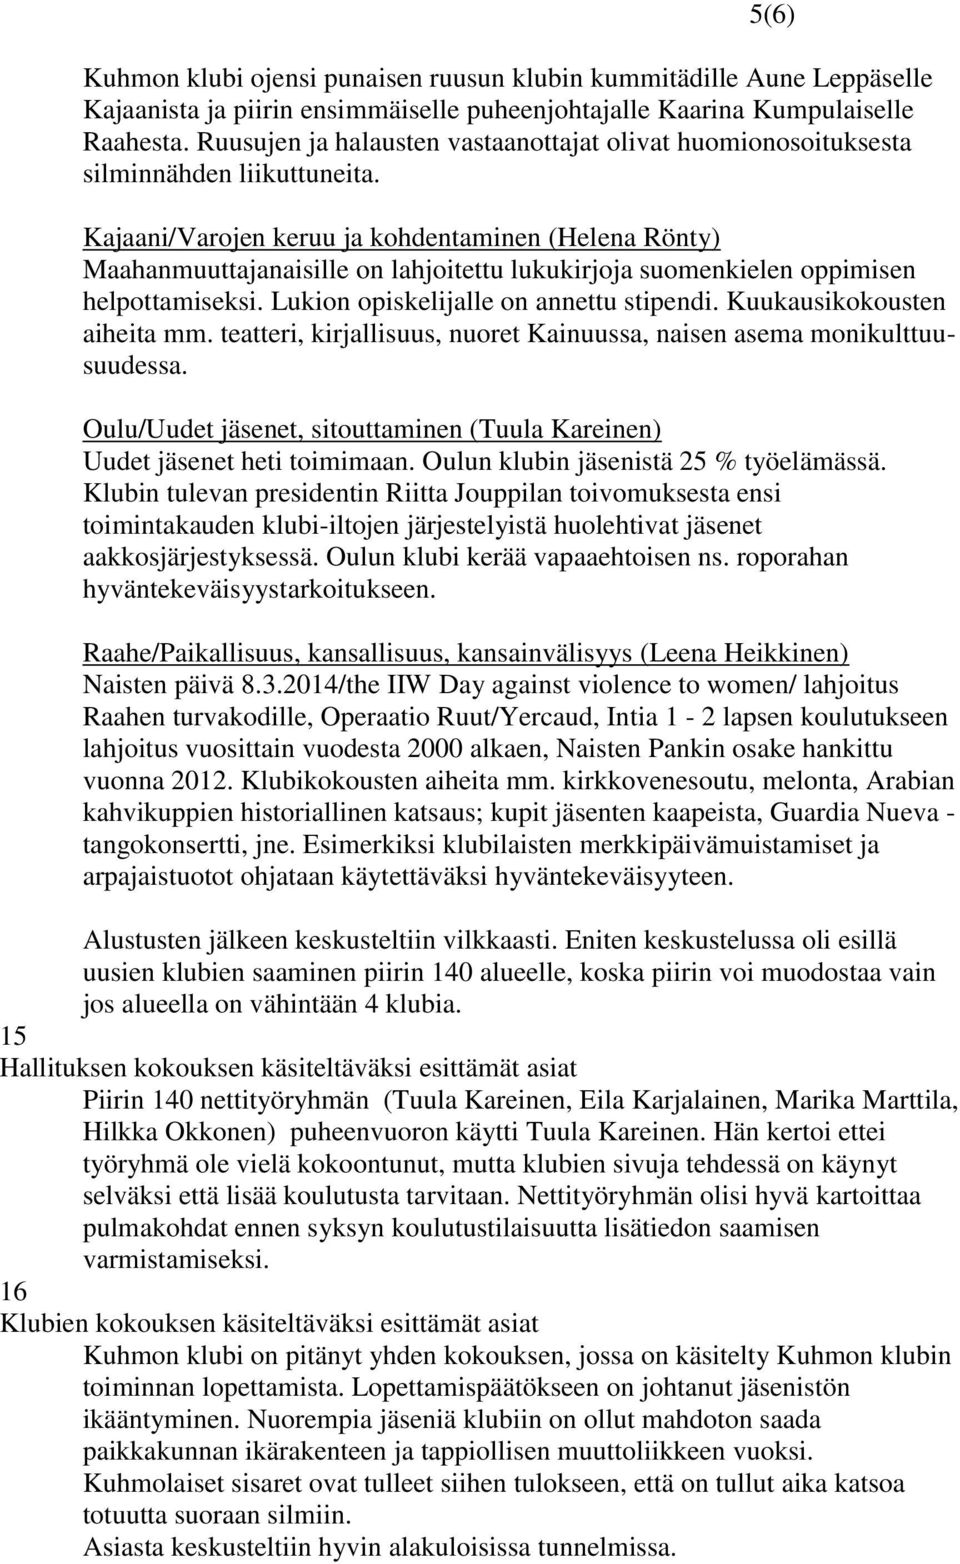 Kajaani/Varojen keruu ja kohdentaminen (Helena Rönty) Maahanmuuttajanaisille on lahjoitettu lukukirjoja suomenkielen oppimisen helpottamiseksi. Lukion opiskelijalle on annettu stipendi.